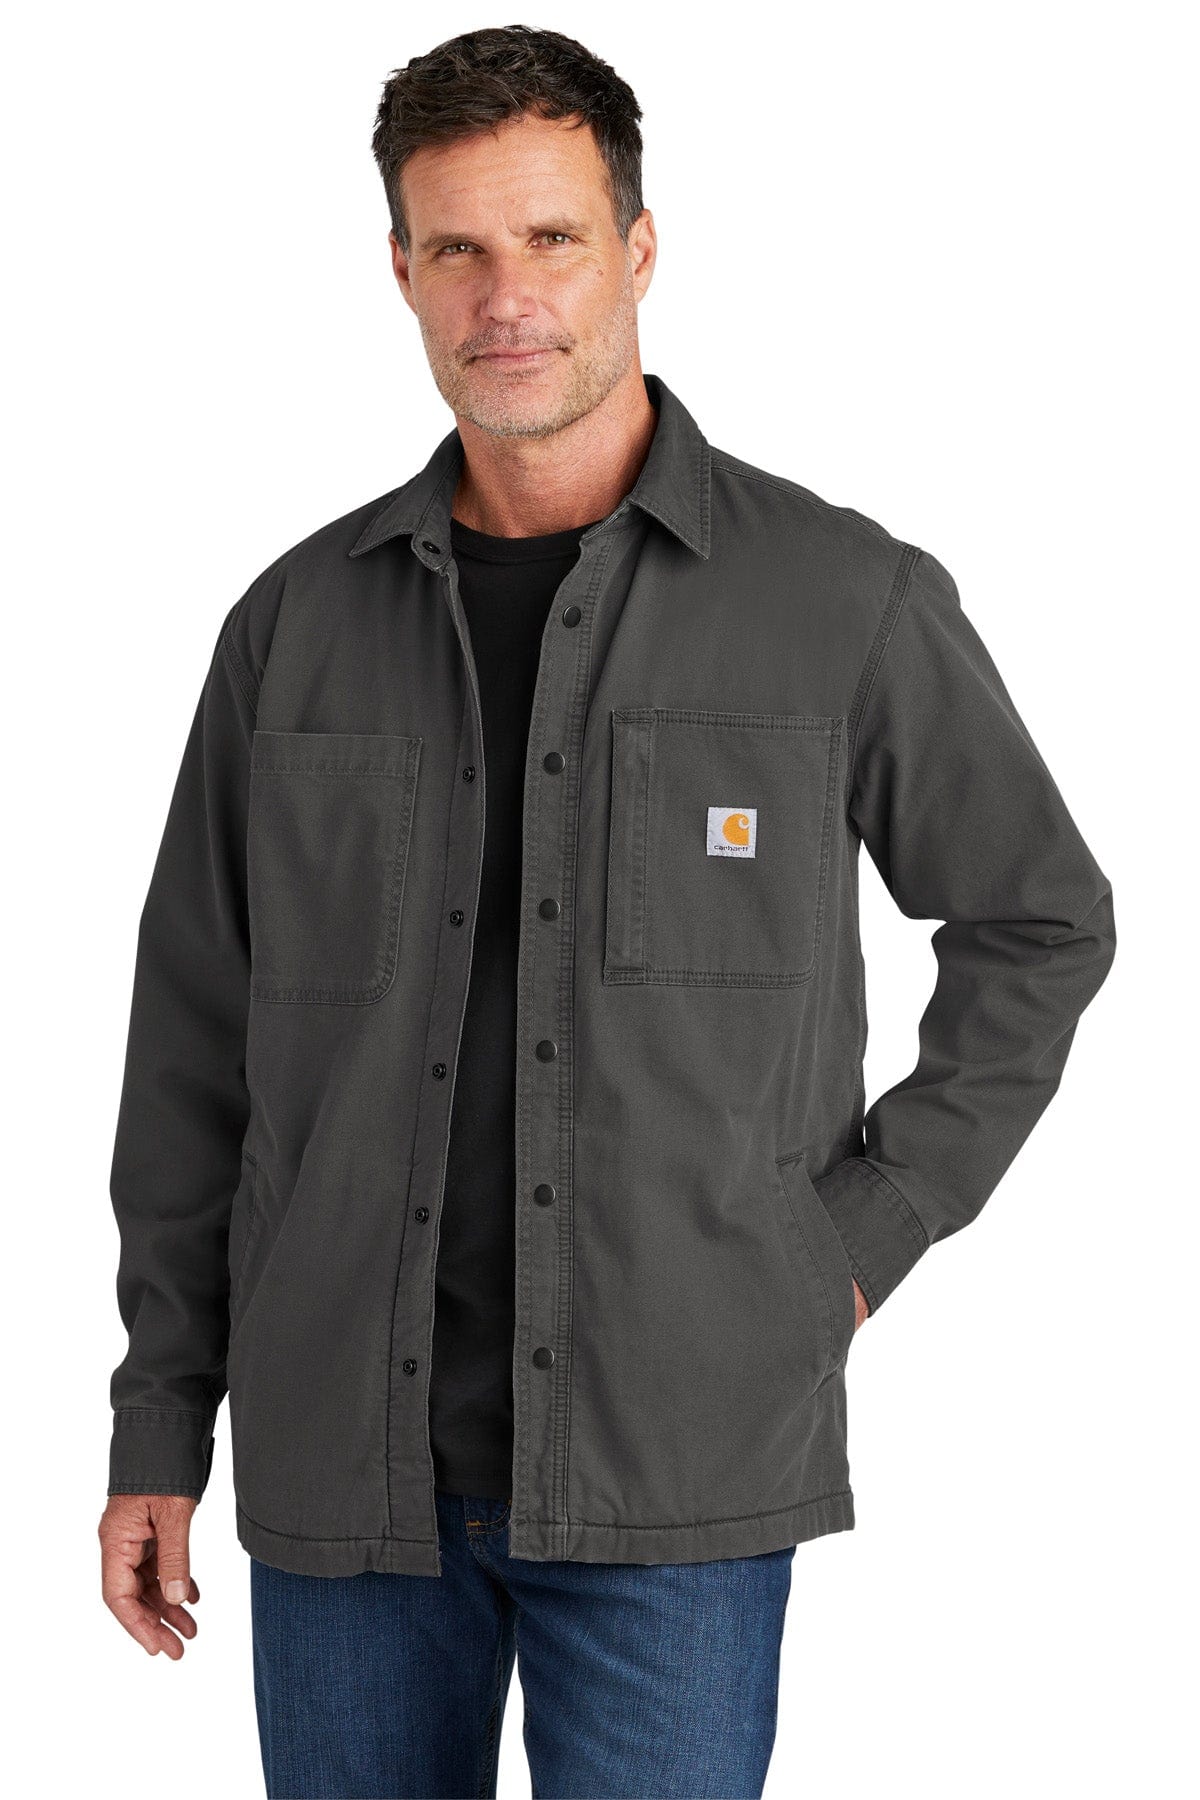 Carhartt Men's Rugged Flex Relaxed Fit Canvas Fleece-Lined Shirt Jacket